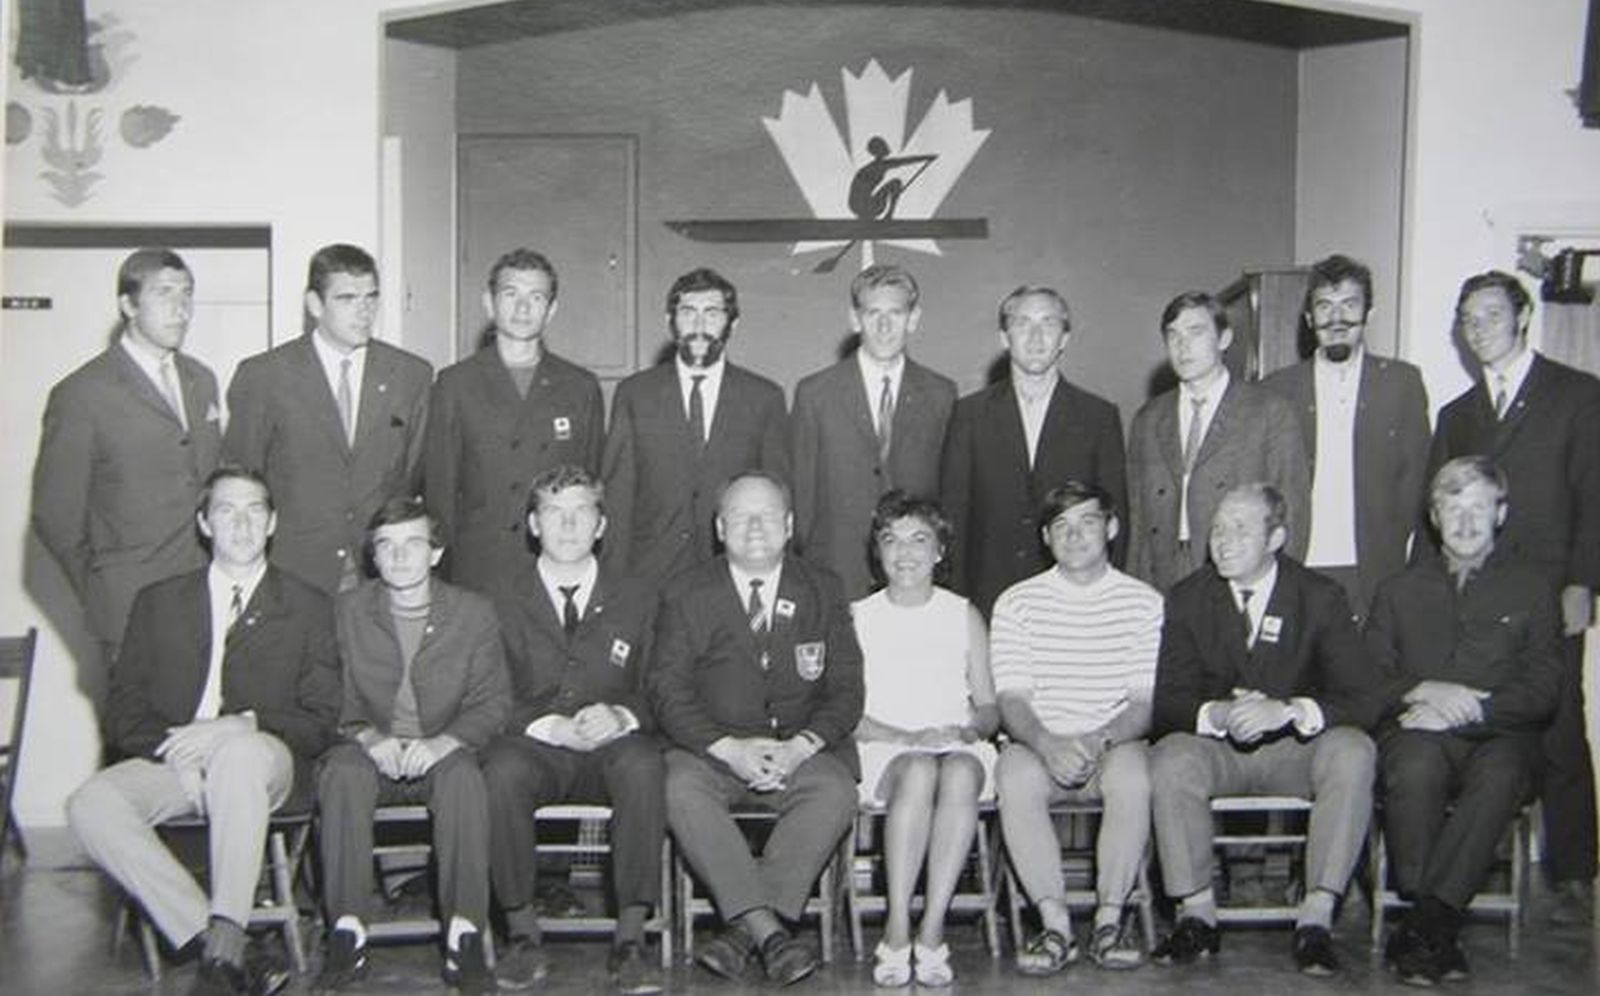 Rok 1970 M.Świata St. Catherines Spotkanie z Polonią Kanadyjską